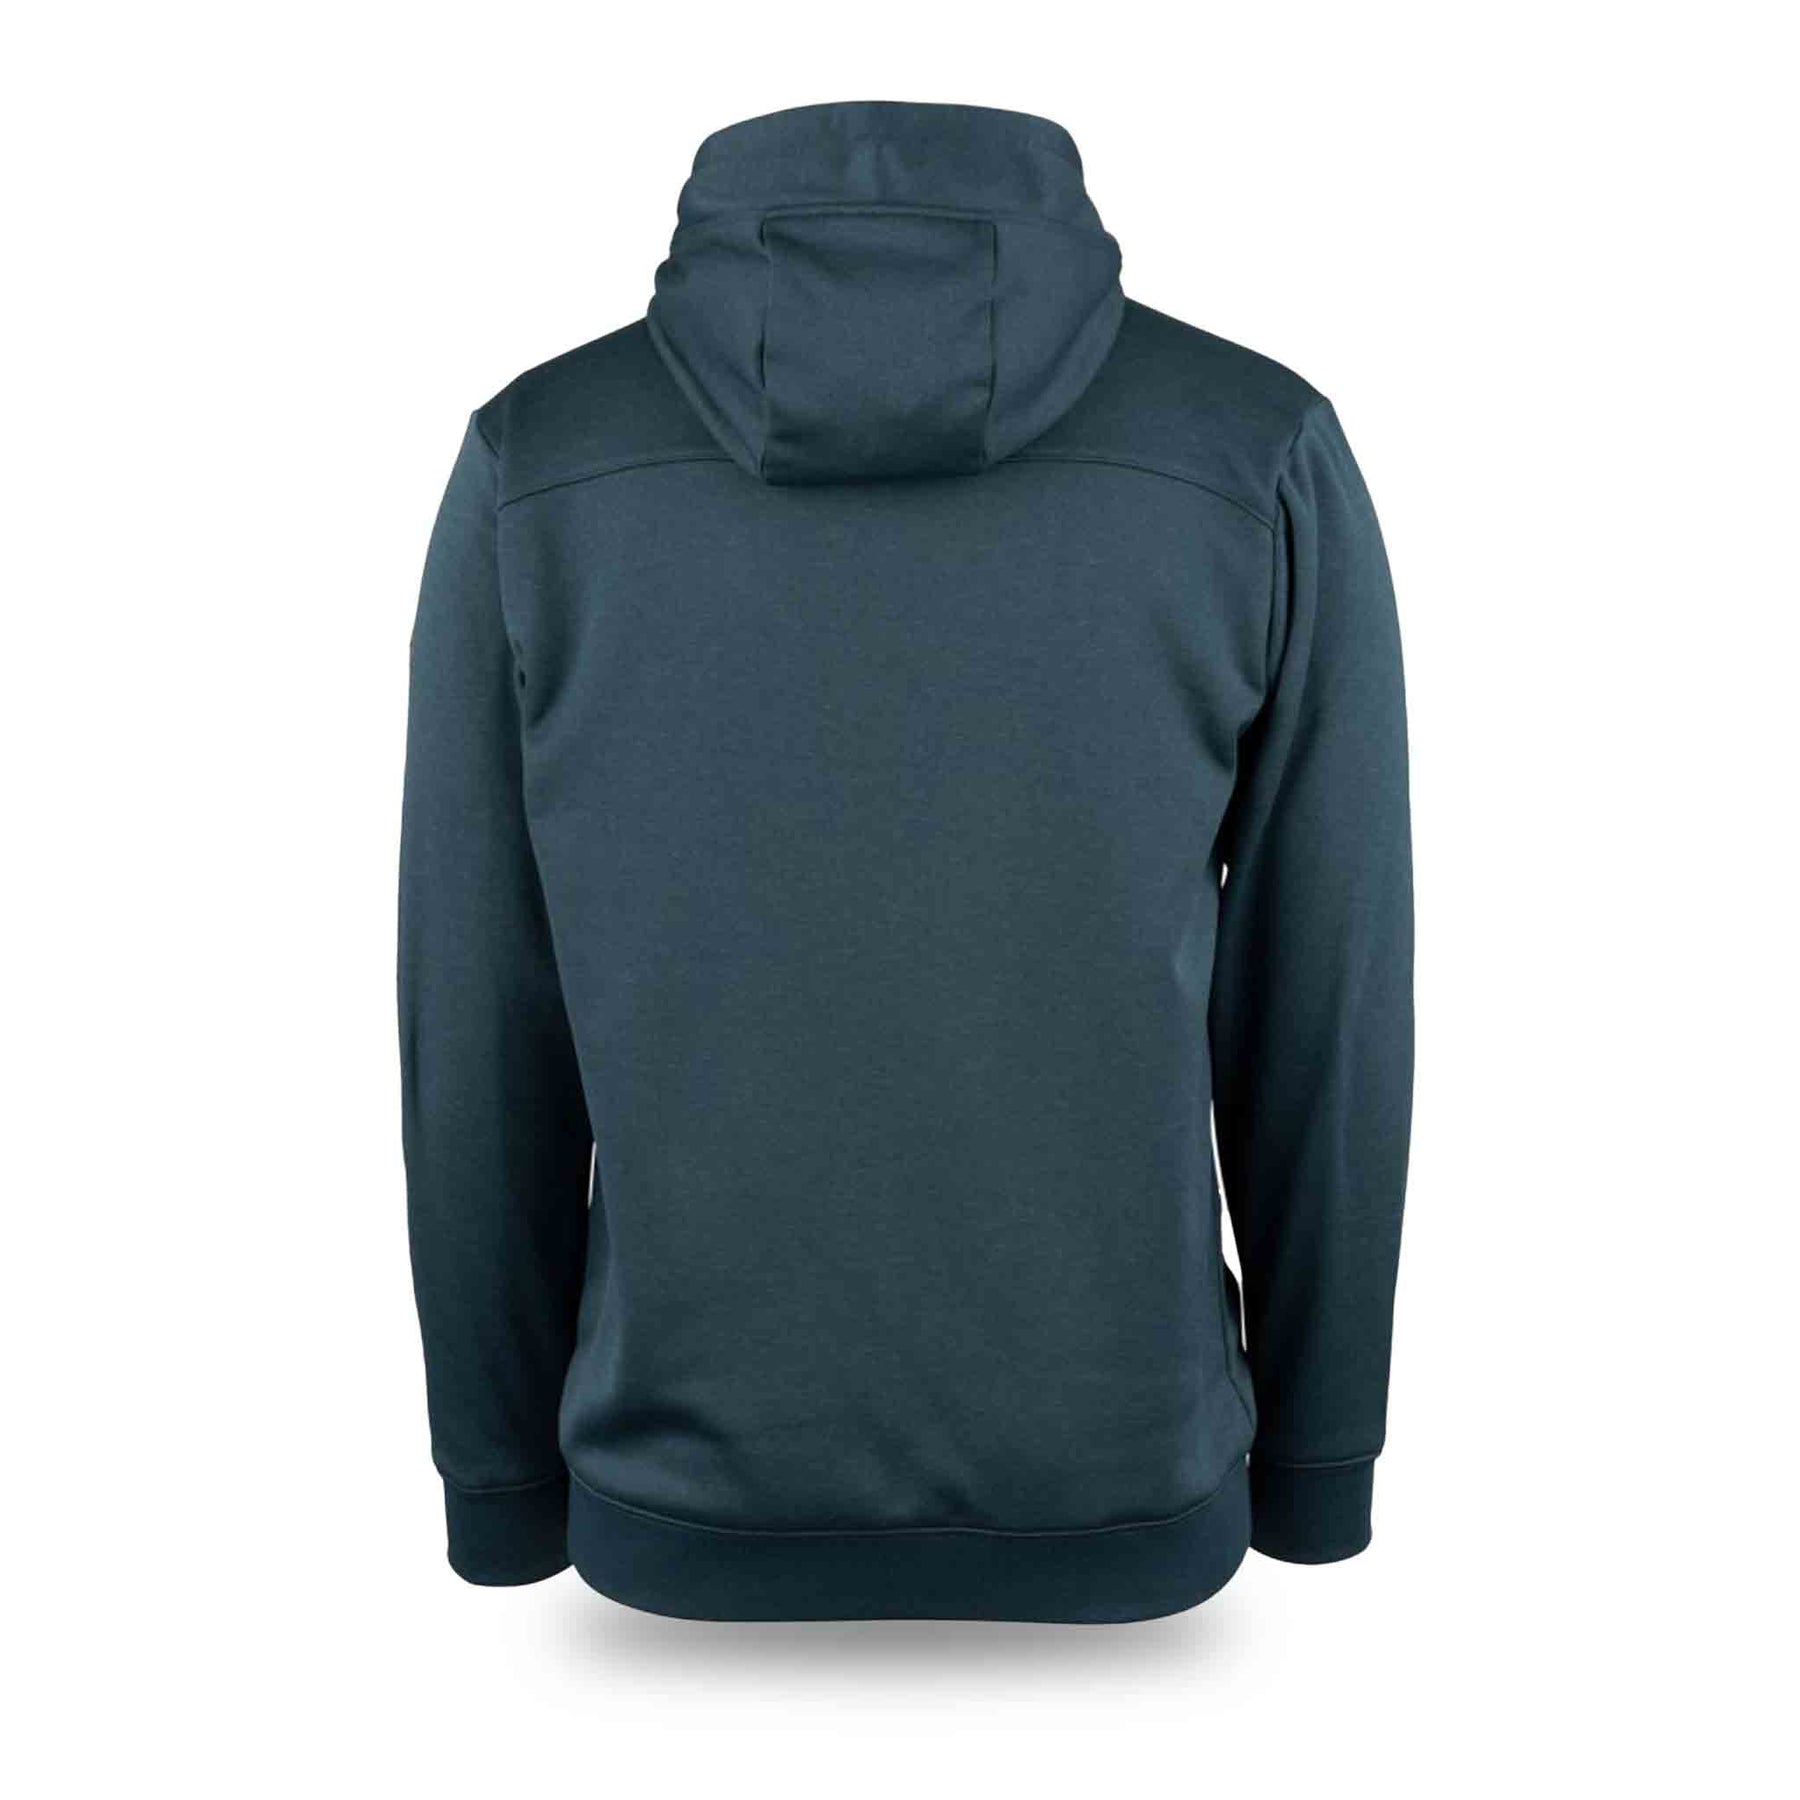 Connec Outdoors SHACK FULL ZIP HOODIE Hoodies-Sweatshirts